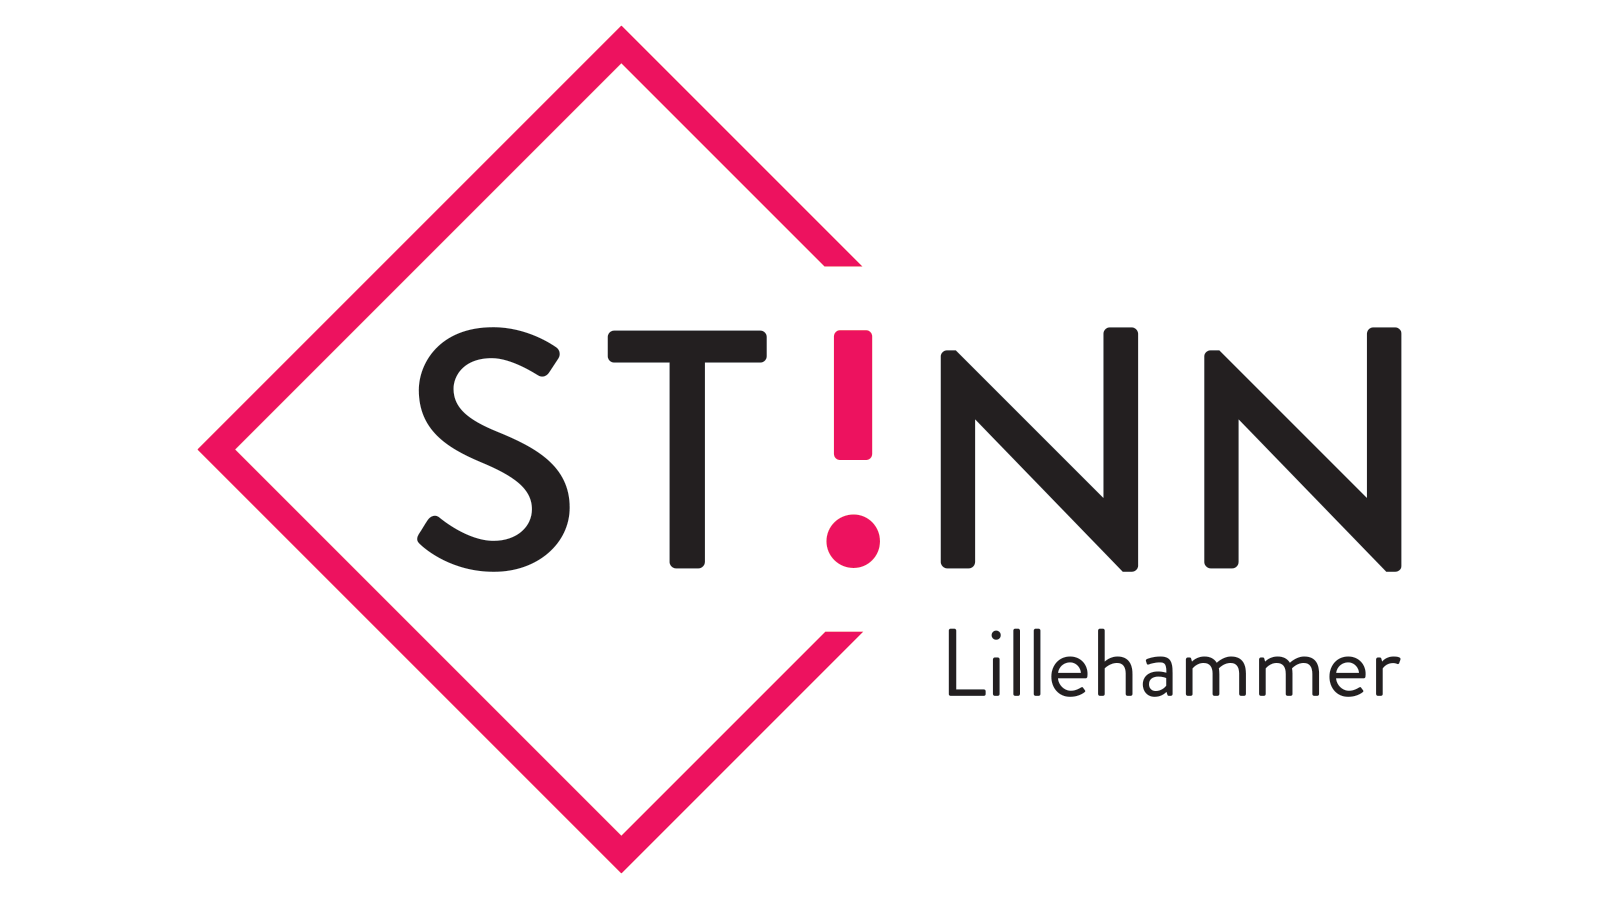 Logo for Studentorganisasjonen i Innlandet